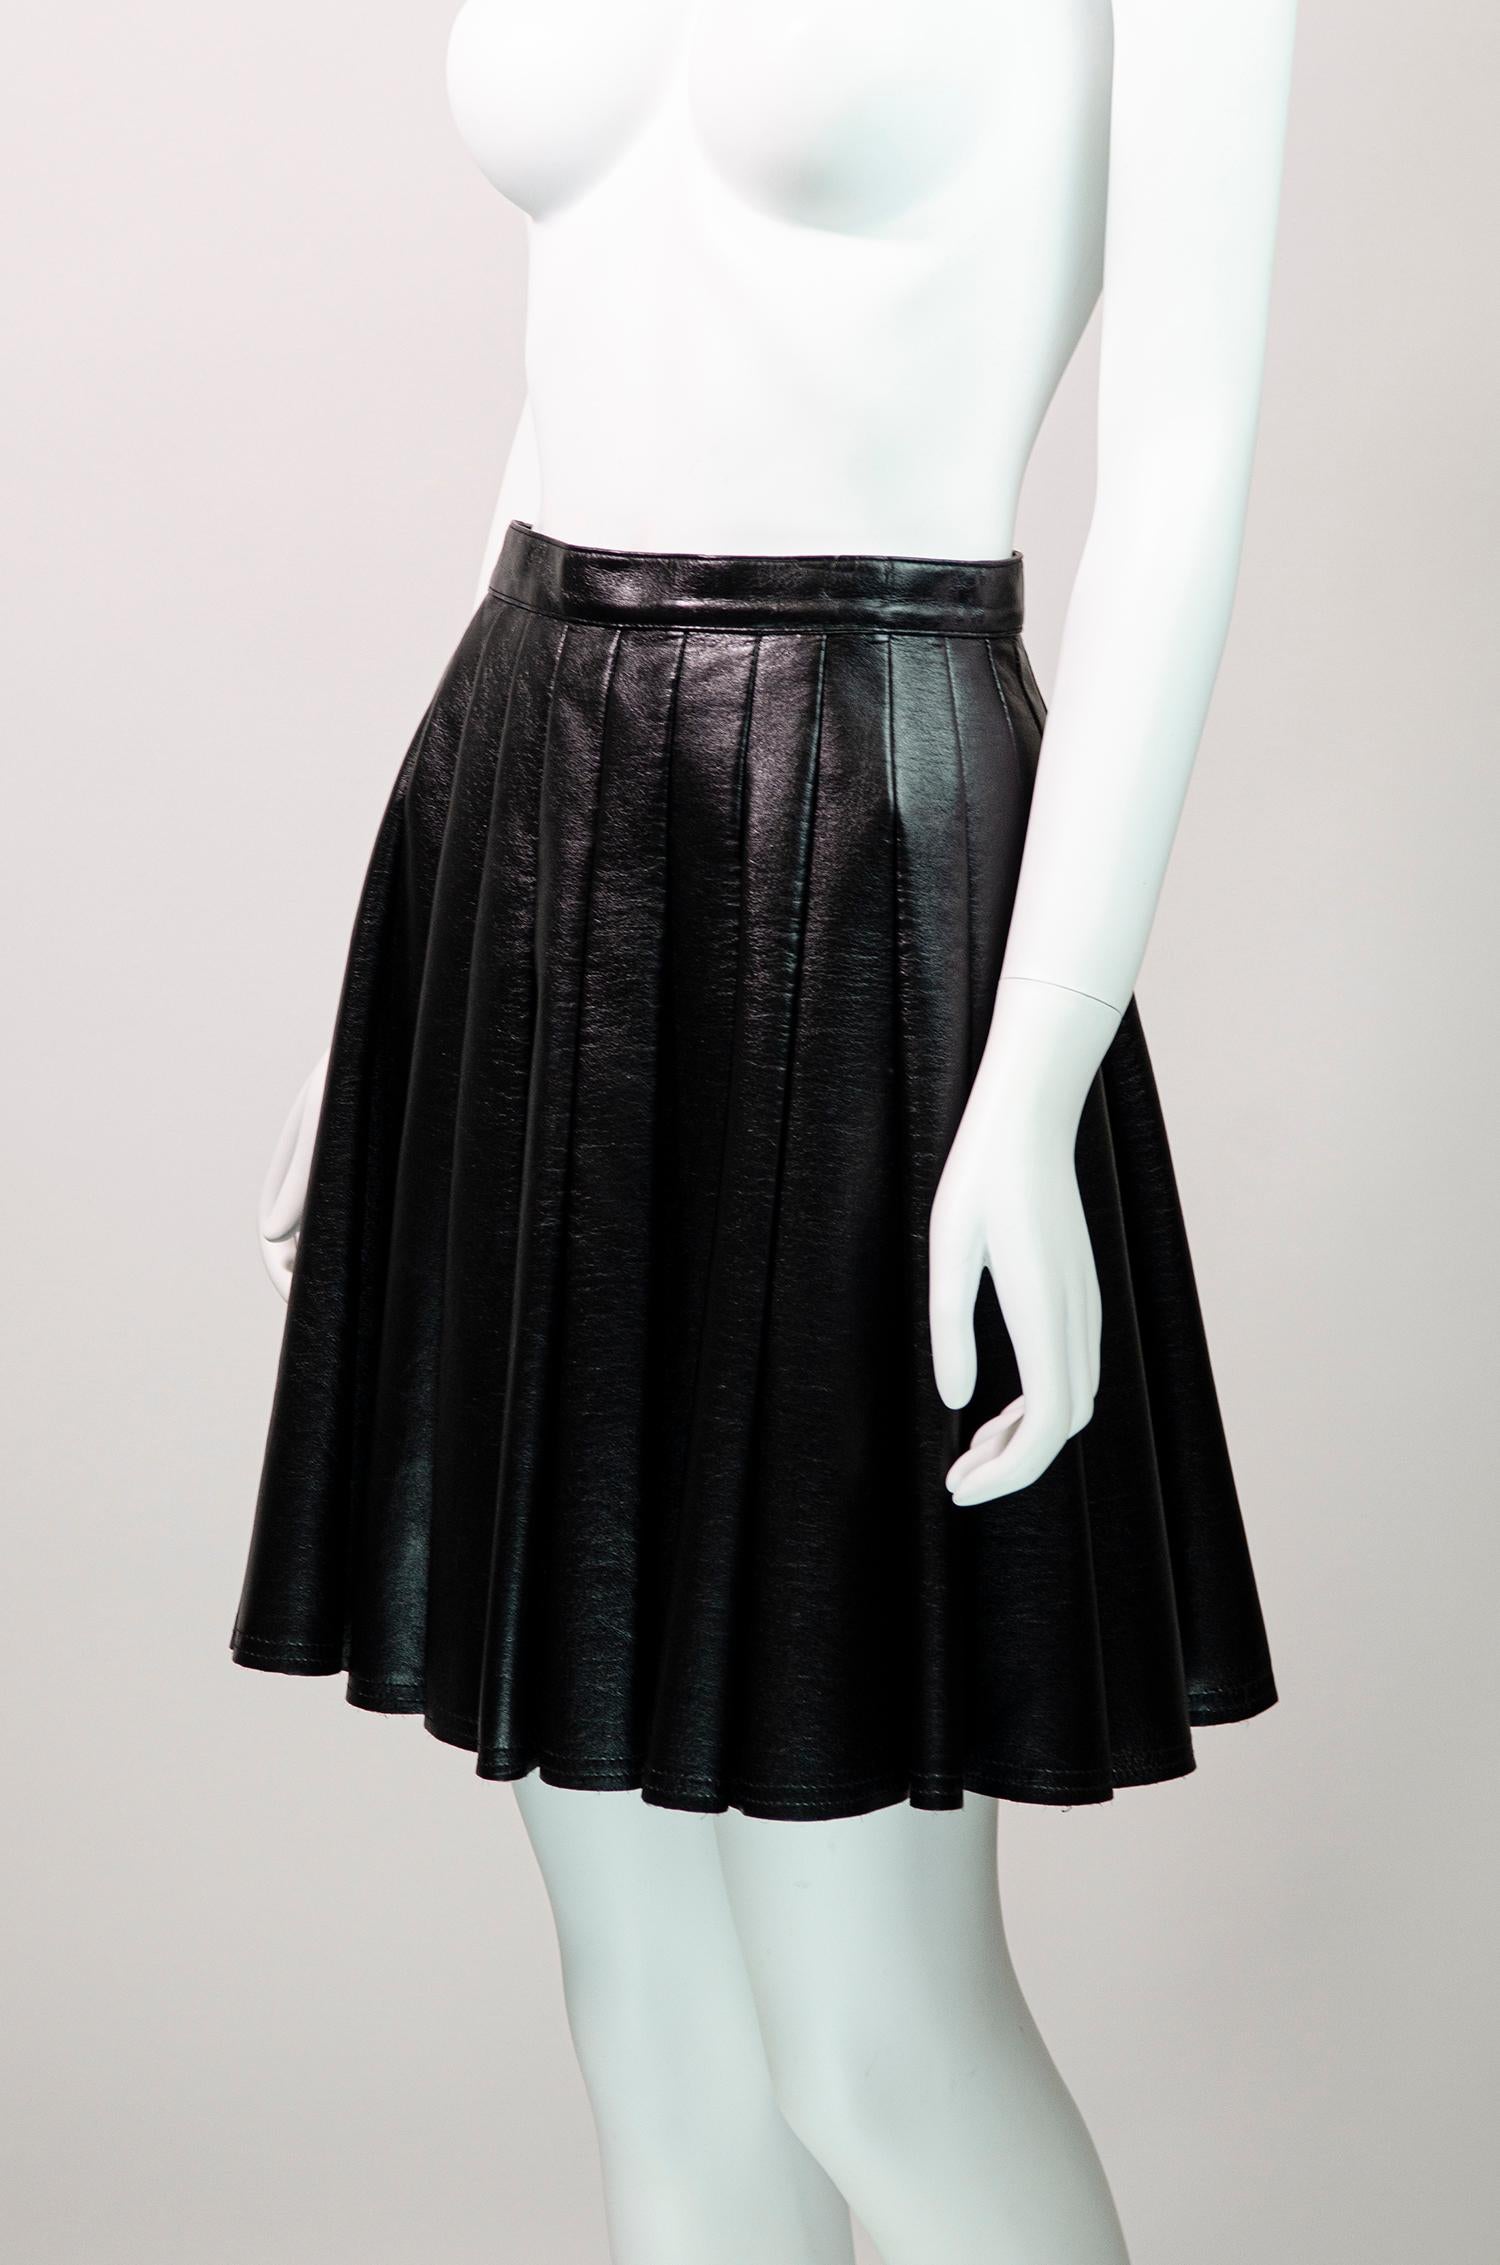 Étonnante jupe plissée en cuir noir du créateur japonais Junya Watanabe.

La luxueuse jupe en cuir est fabriquée à partir d'un cuir souple. Elle est ajustée à la taille et plissée sur le corps. La longueur tombe au-dessus du genou. Il se ferme à